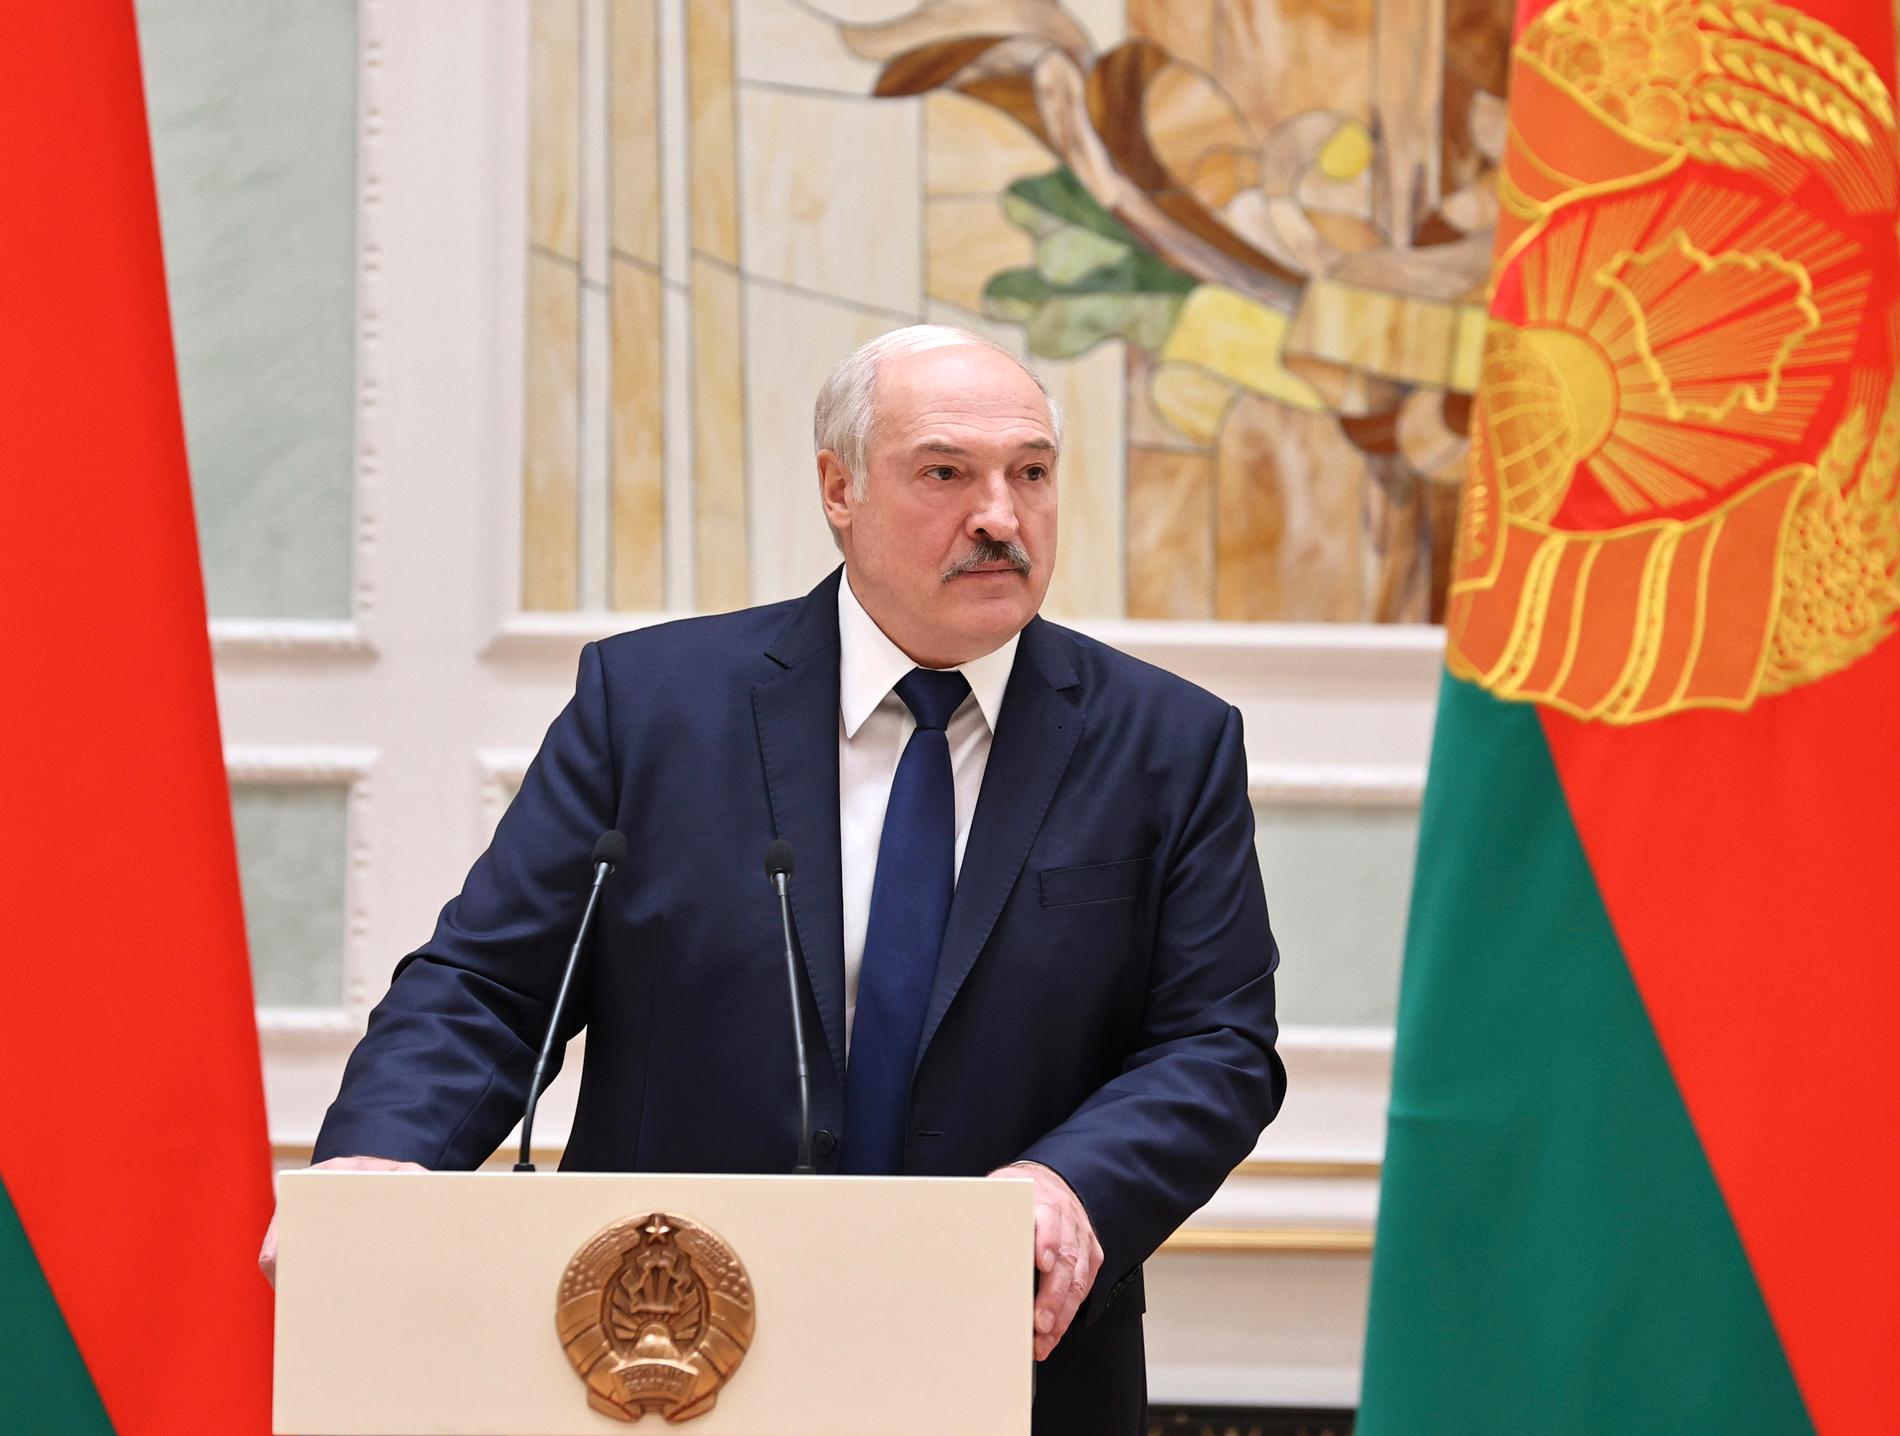 ”Sedan augusti 2020 har belarusier ropat ut sina varningar och sin förtvivlan över Lukasjenskas tilltagande vansinne”, skriver Inga-Lina Lindqvist.